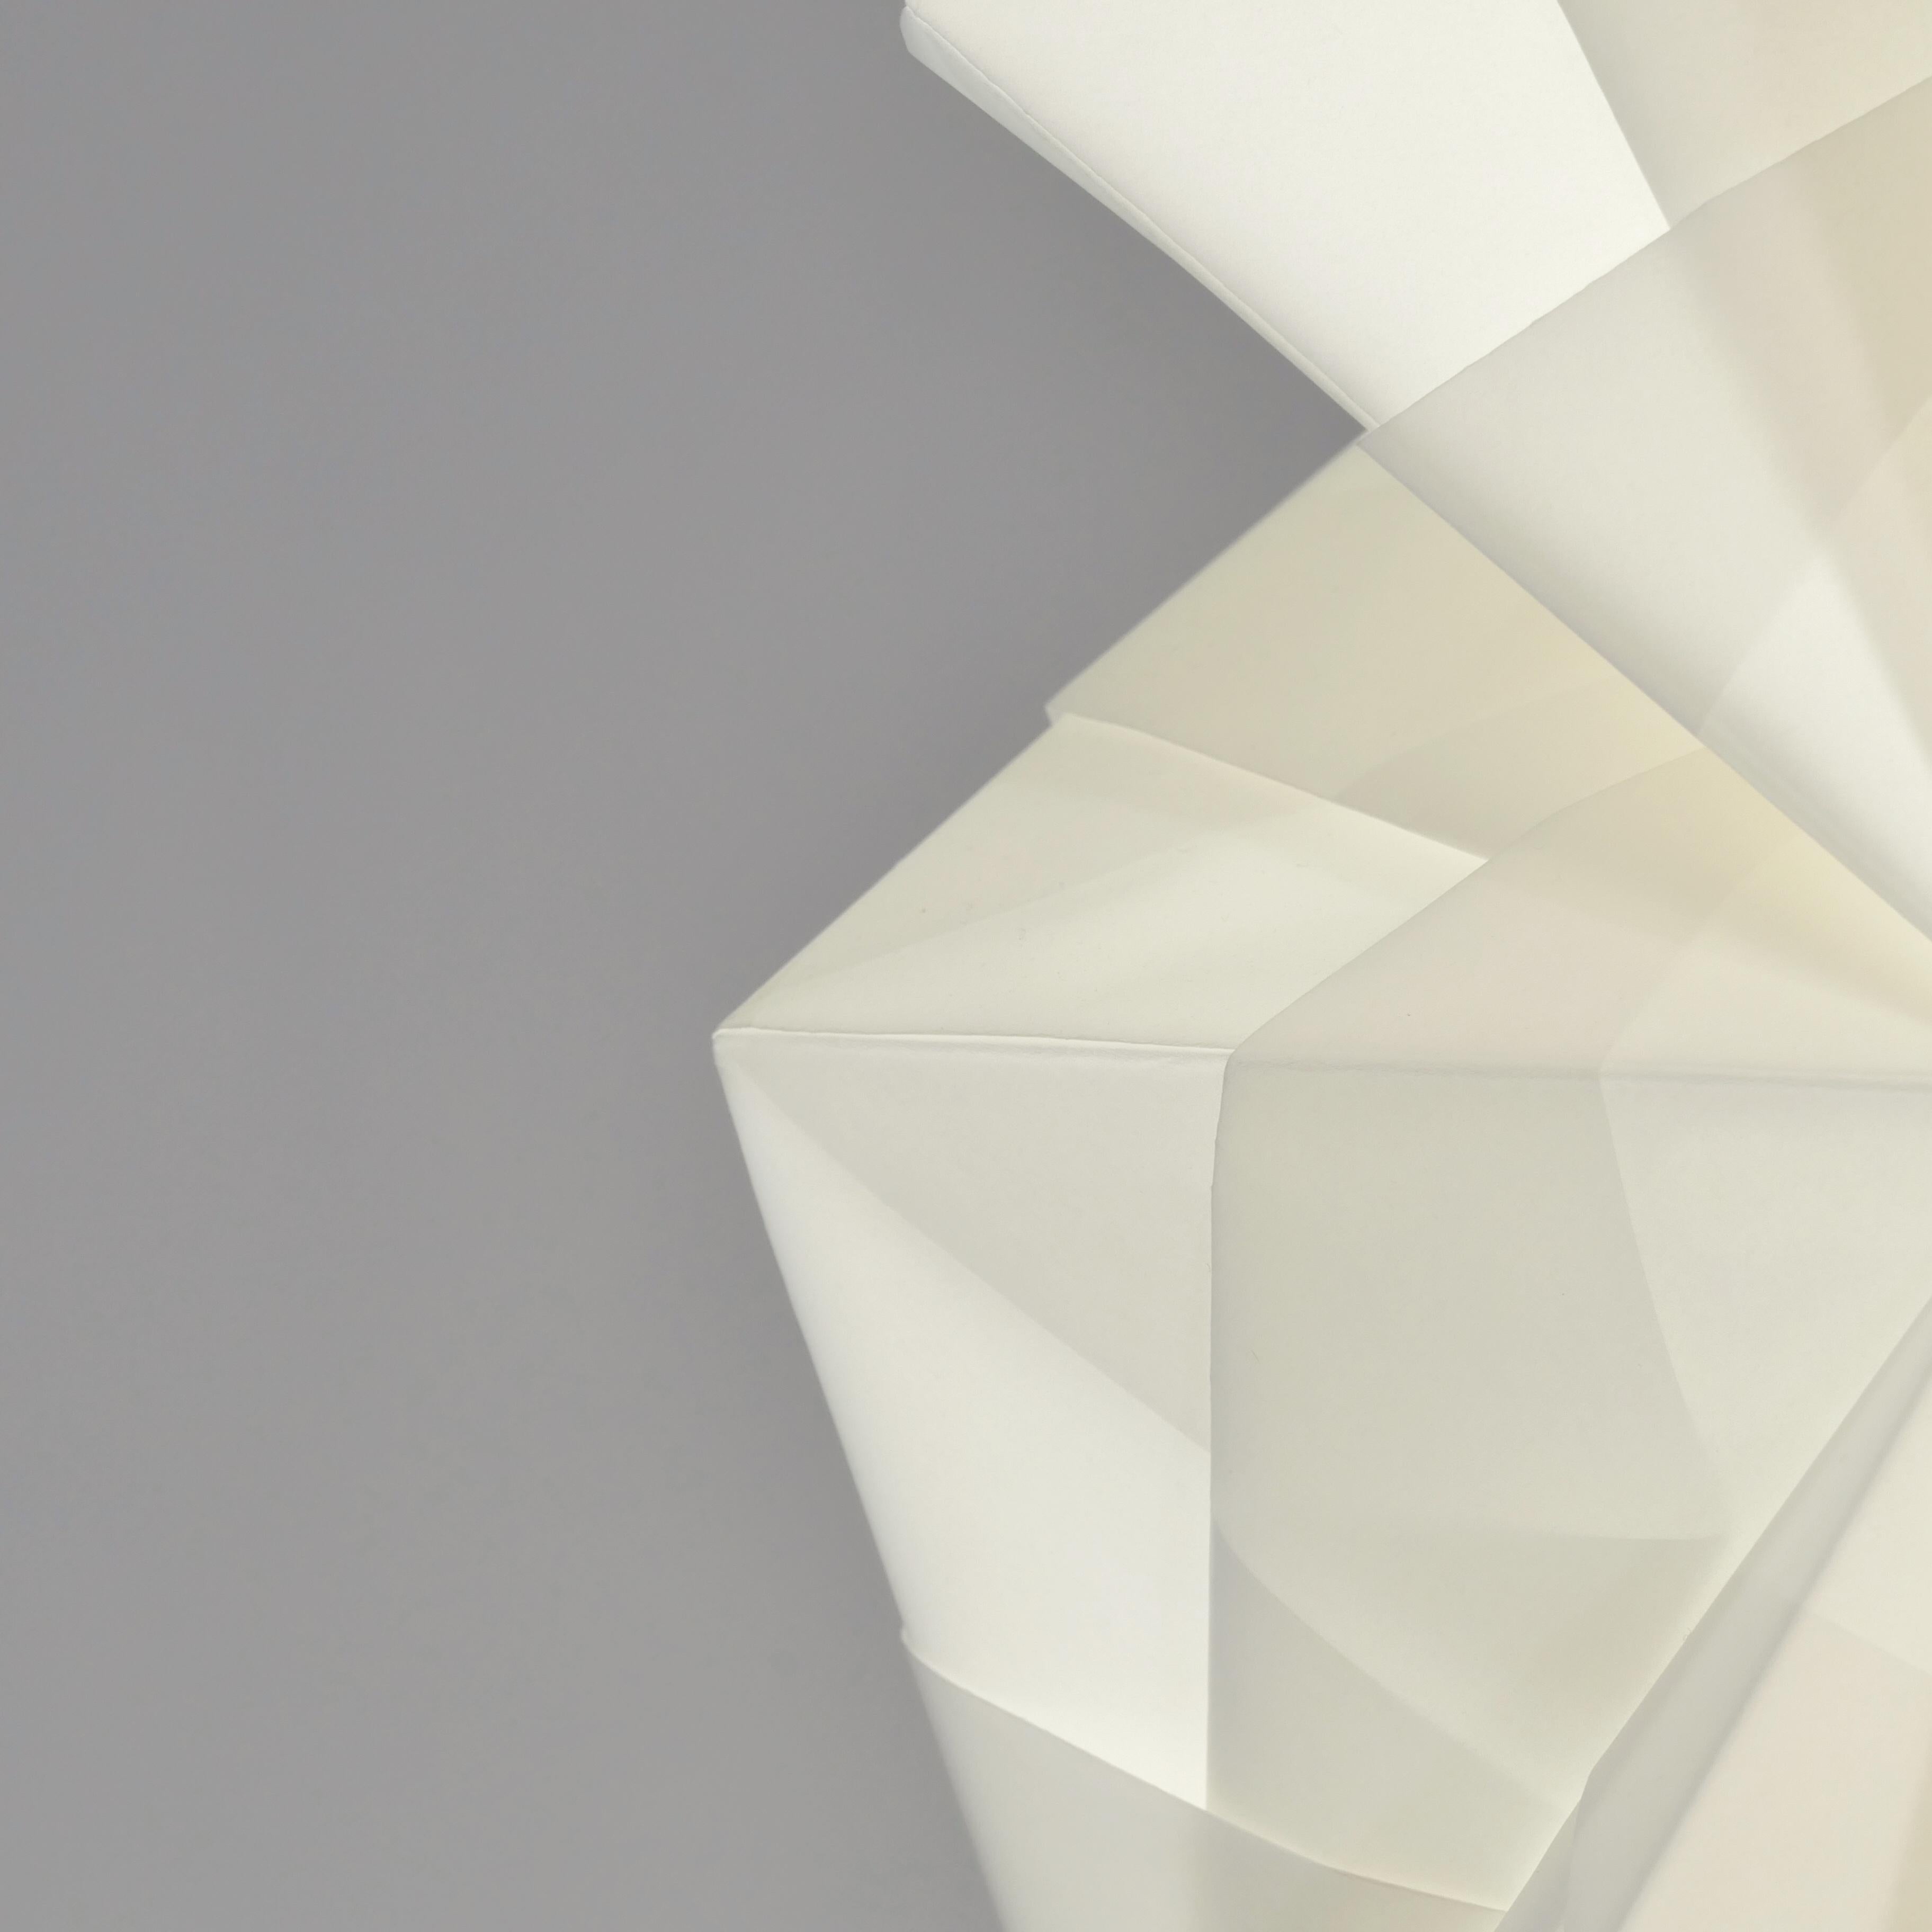 Danish Japanese Style Hand-folded White Paper Pendant Lighting 